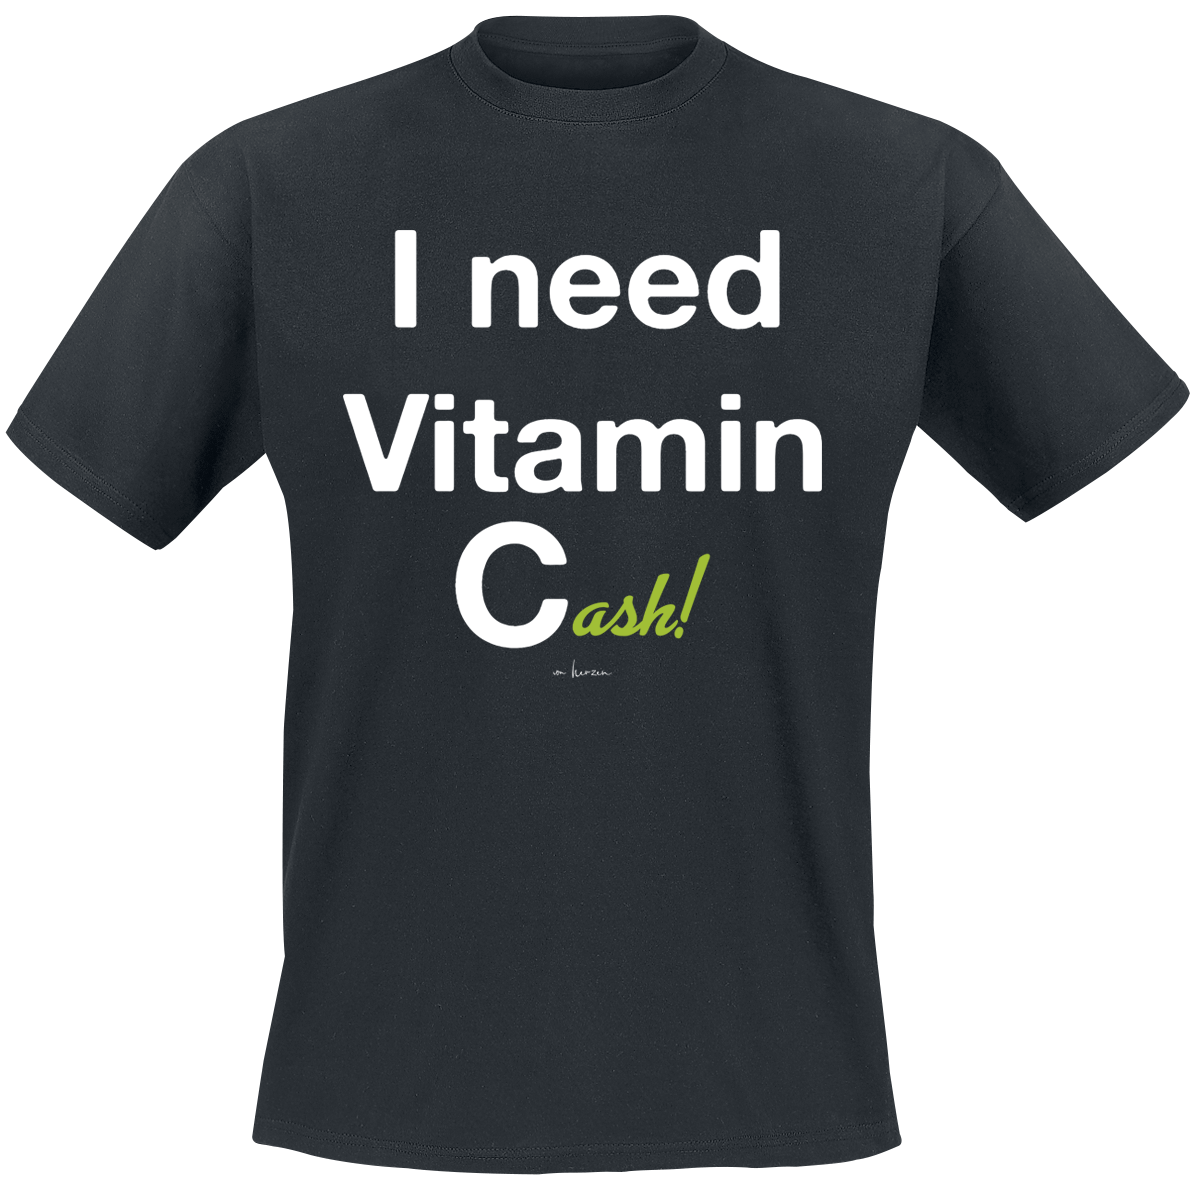 Sprüche - I Need Vitamin Cash! - T-Shirt - schwarz - EMP Exklusiv!